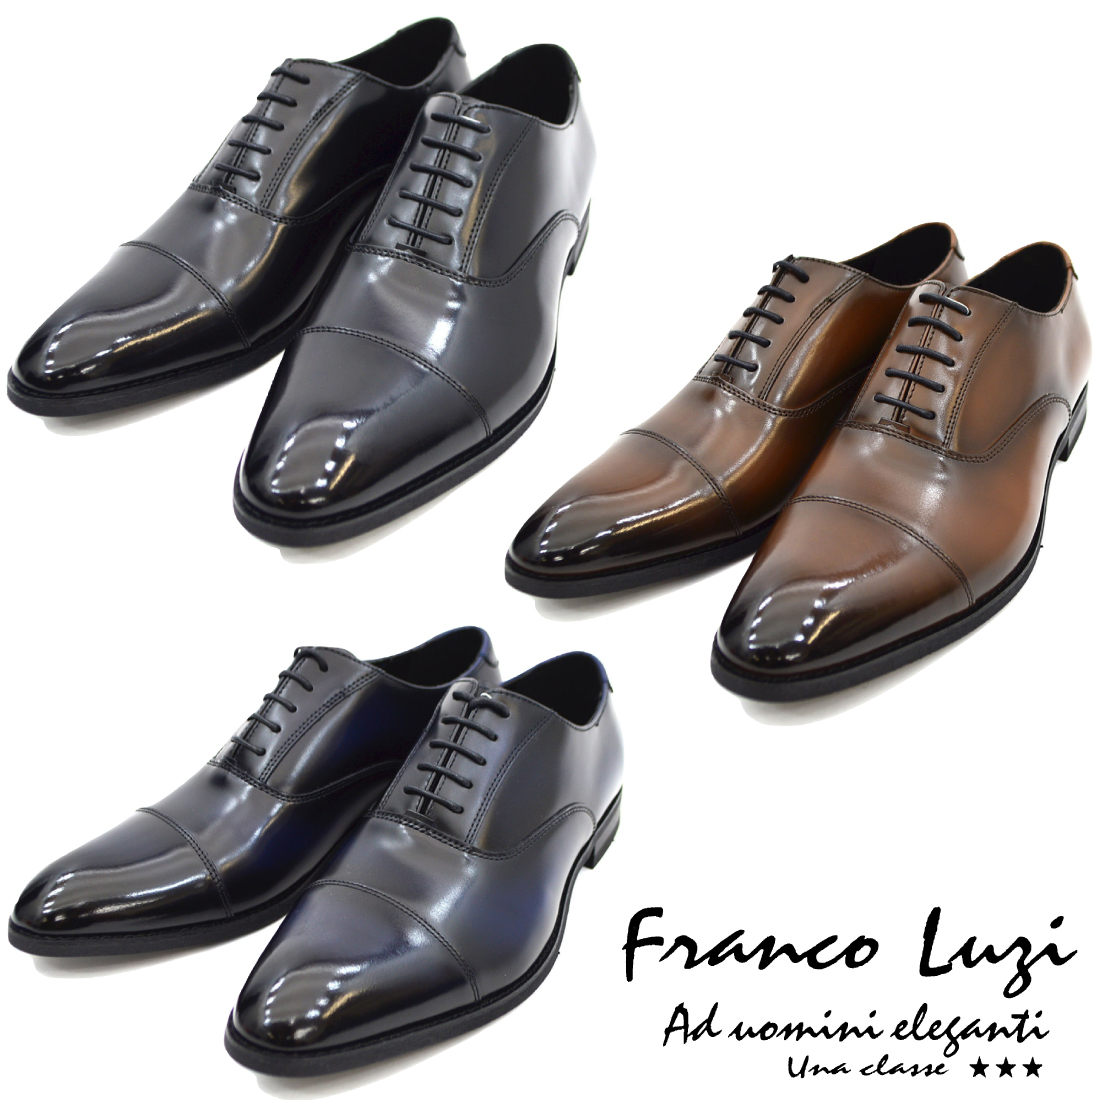 ▲FRANCO LUZI フランコ ルッチ 2001 ビジネスシューズ ストレートチップ 紳士靴 革靴 メンズ ブラック 黒 27.0cm (0910010550-bk-s270)